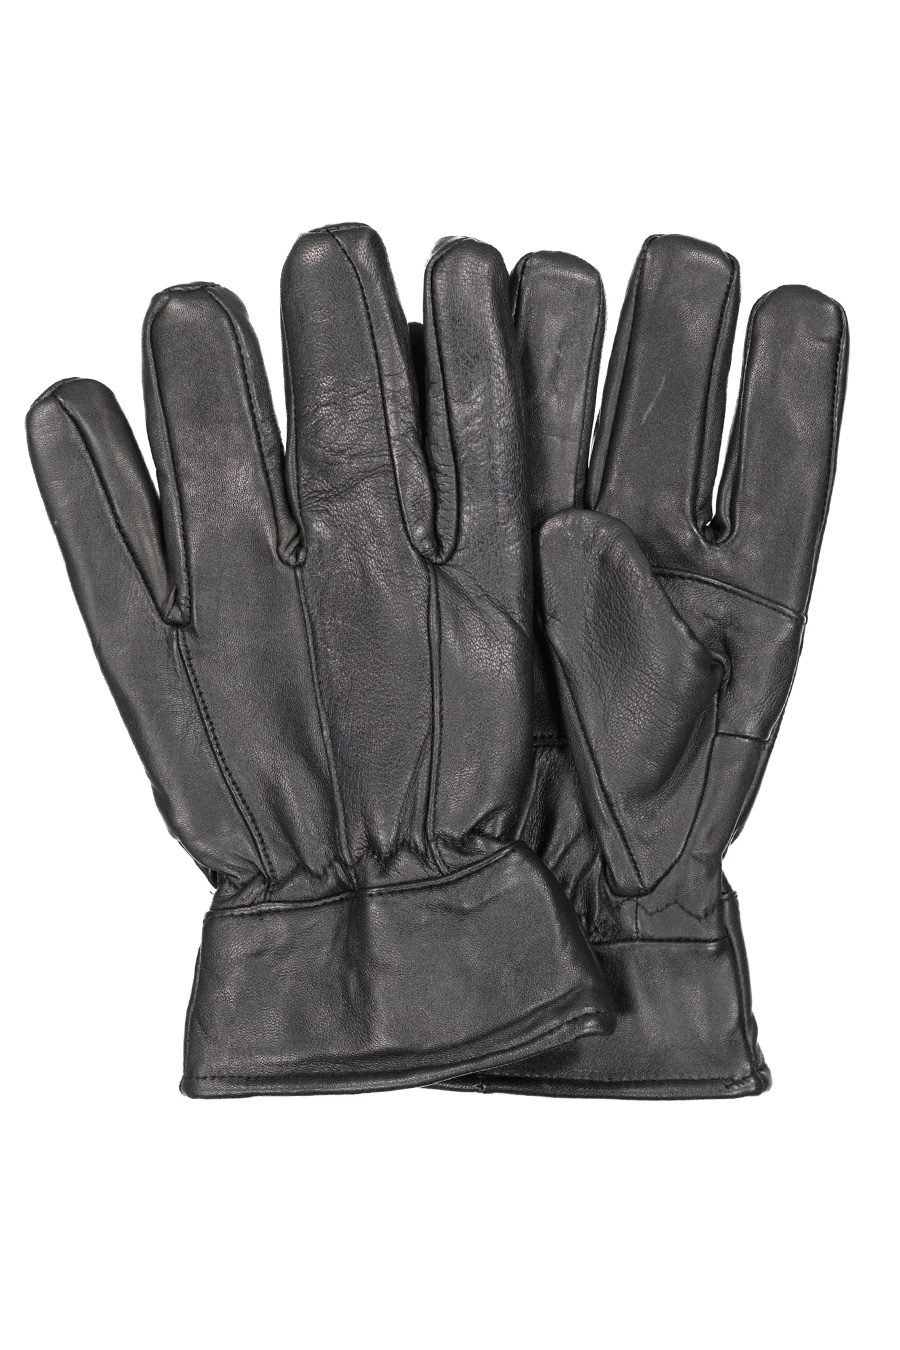 Handschuhe HOFLER RL42450-Black